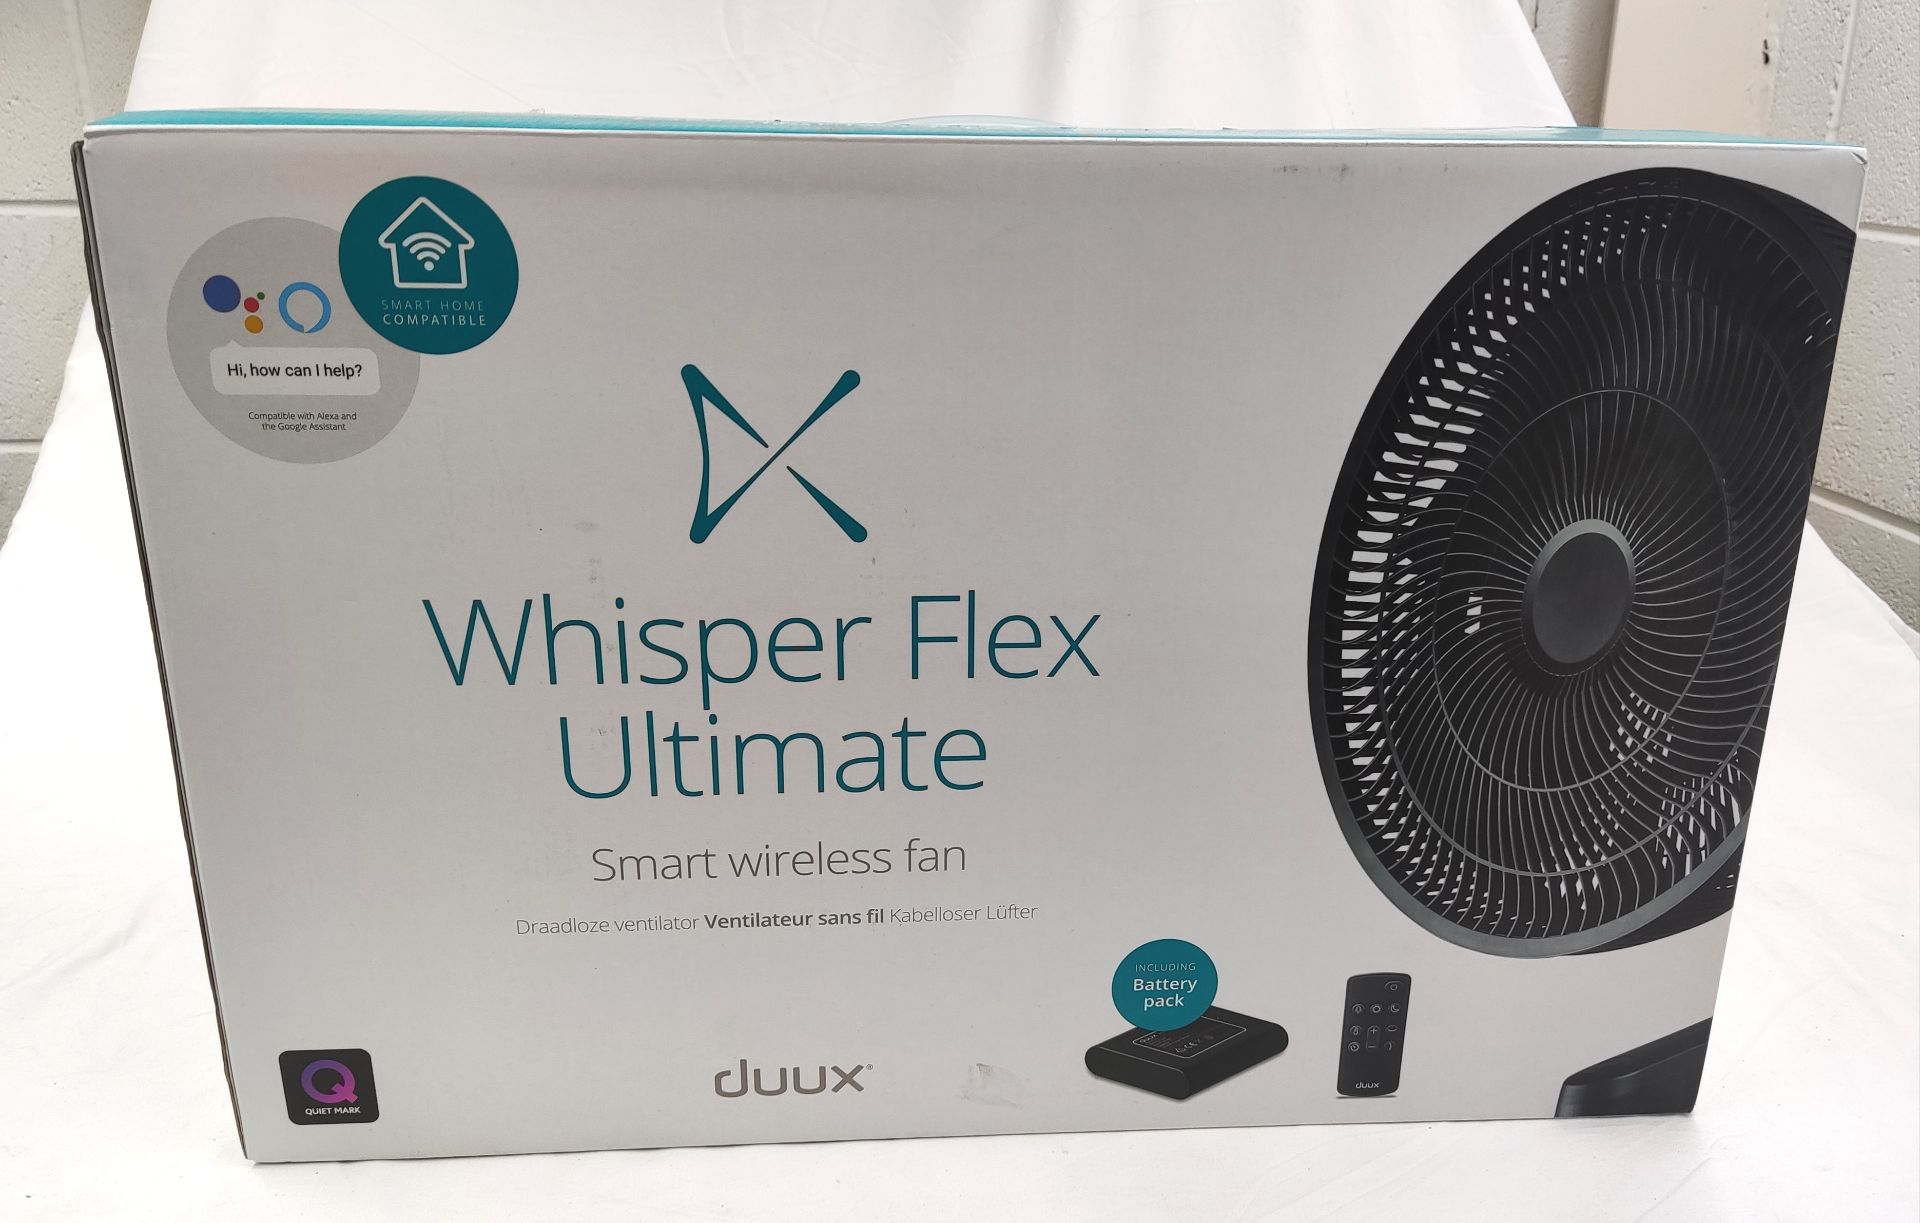 1 x DUUX Whisper Flex Ultimate Smart Wireless Fan - Boxed - RRP £249.99 - Ref: /HOC299/HC6 - CL987 - - Image 2 of 19